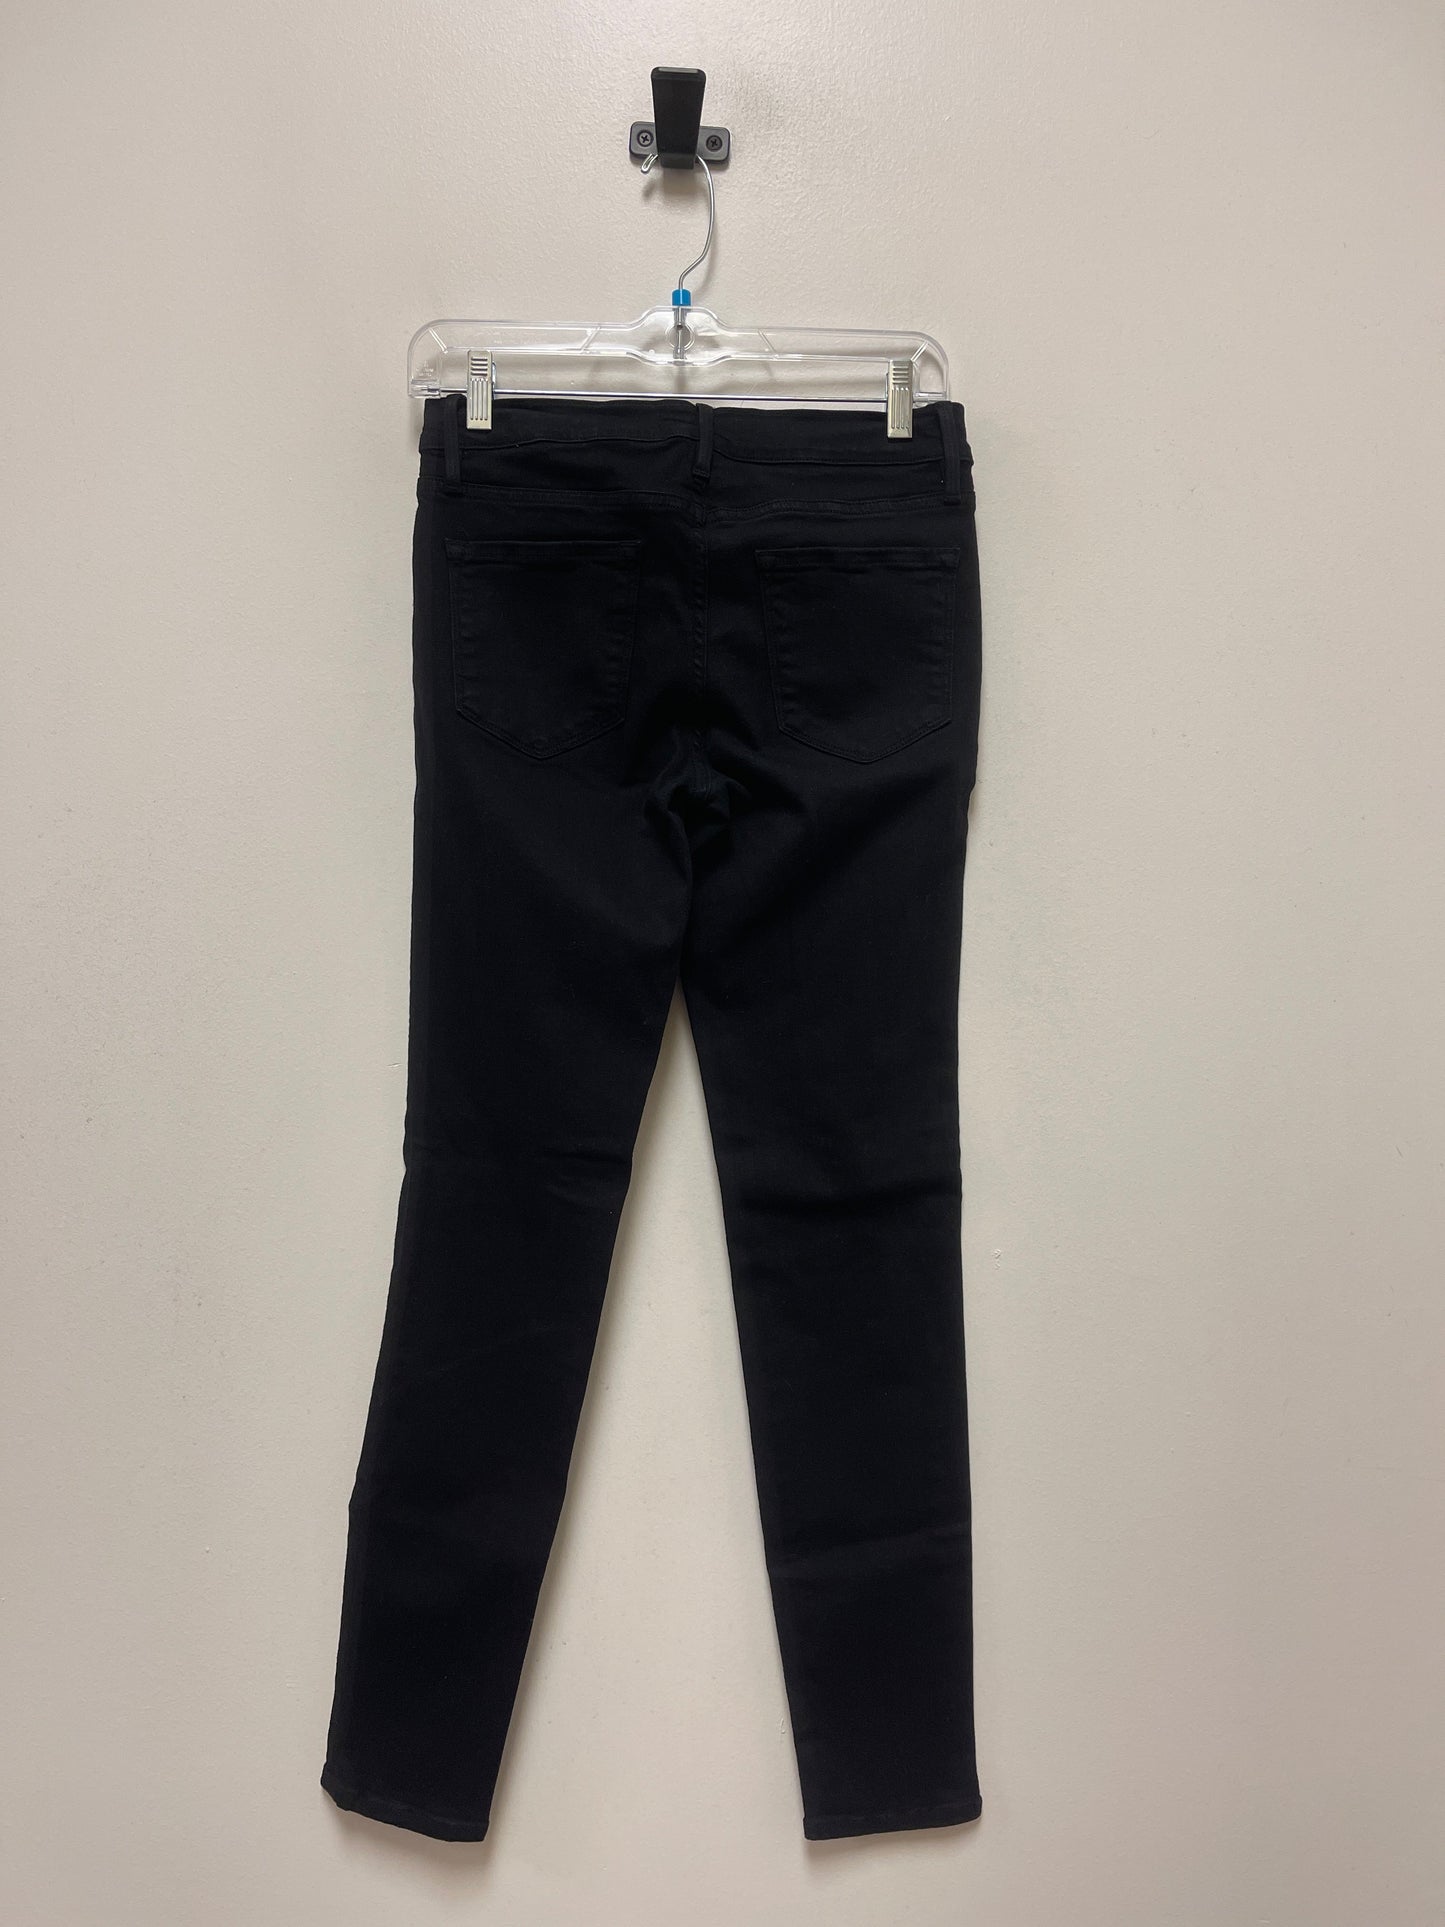 Jeans Designer By Frame  Size: 4